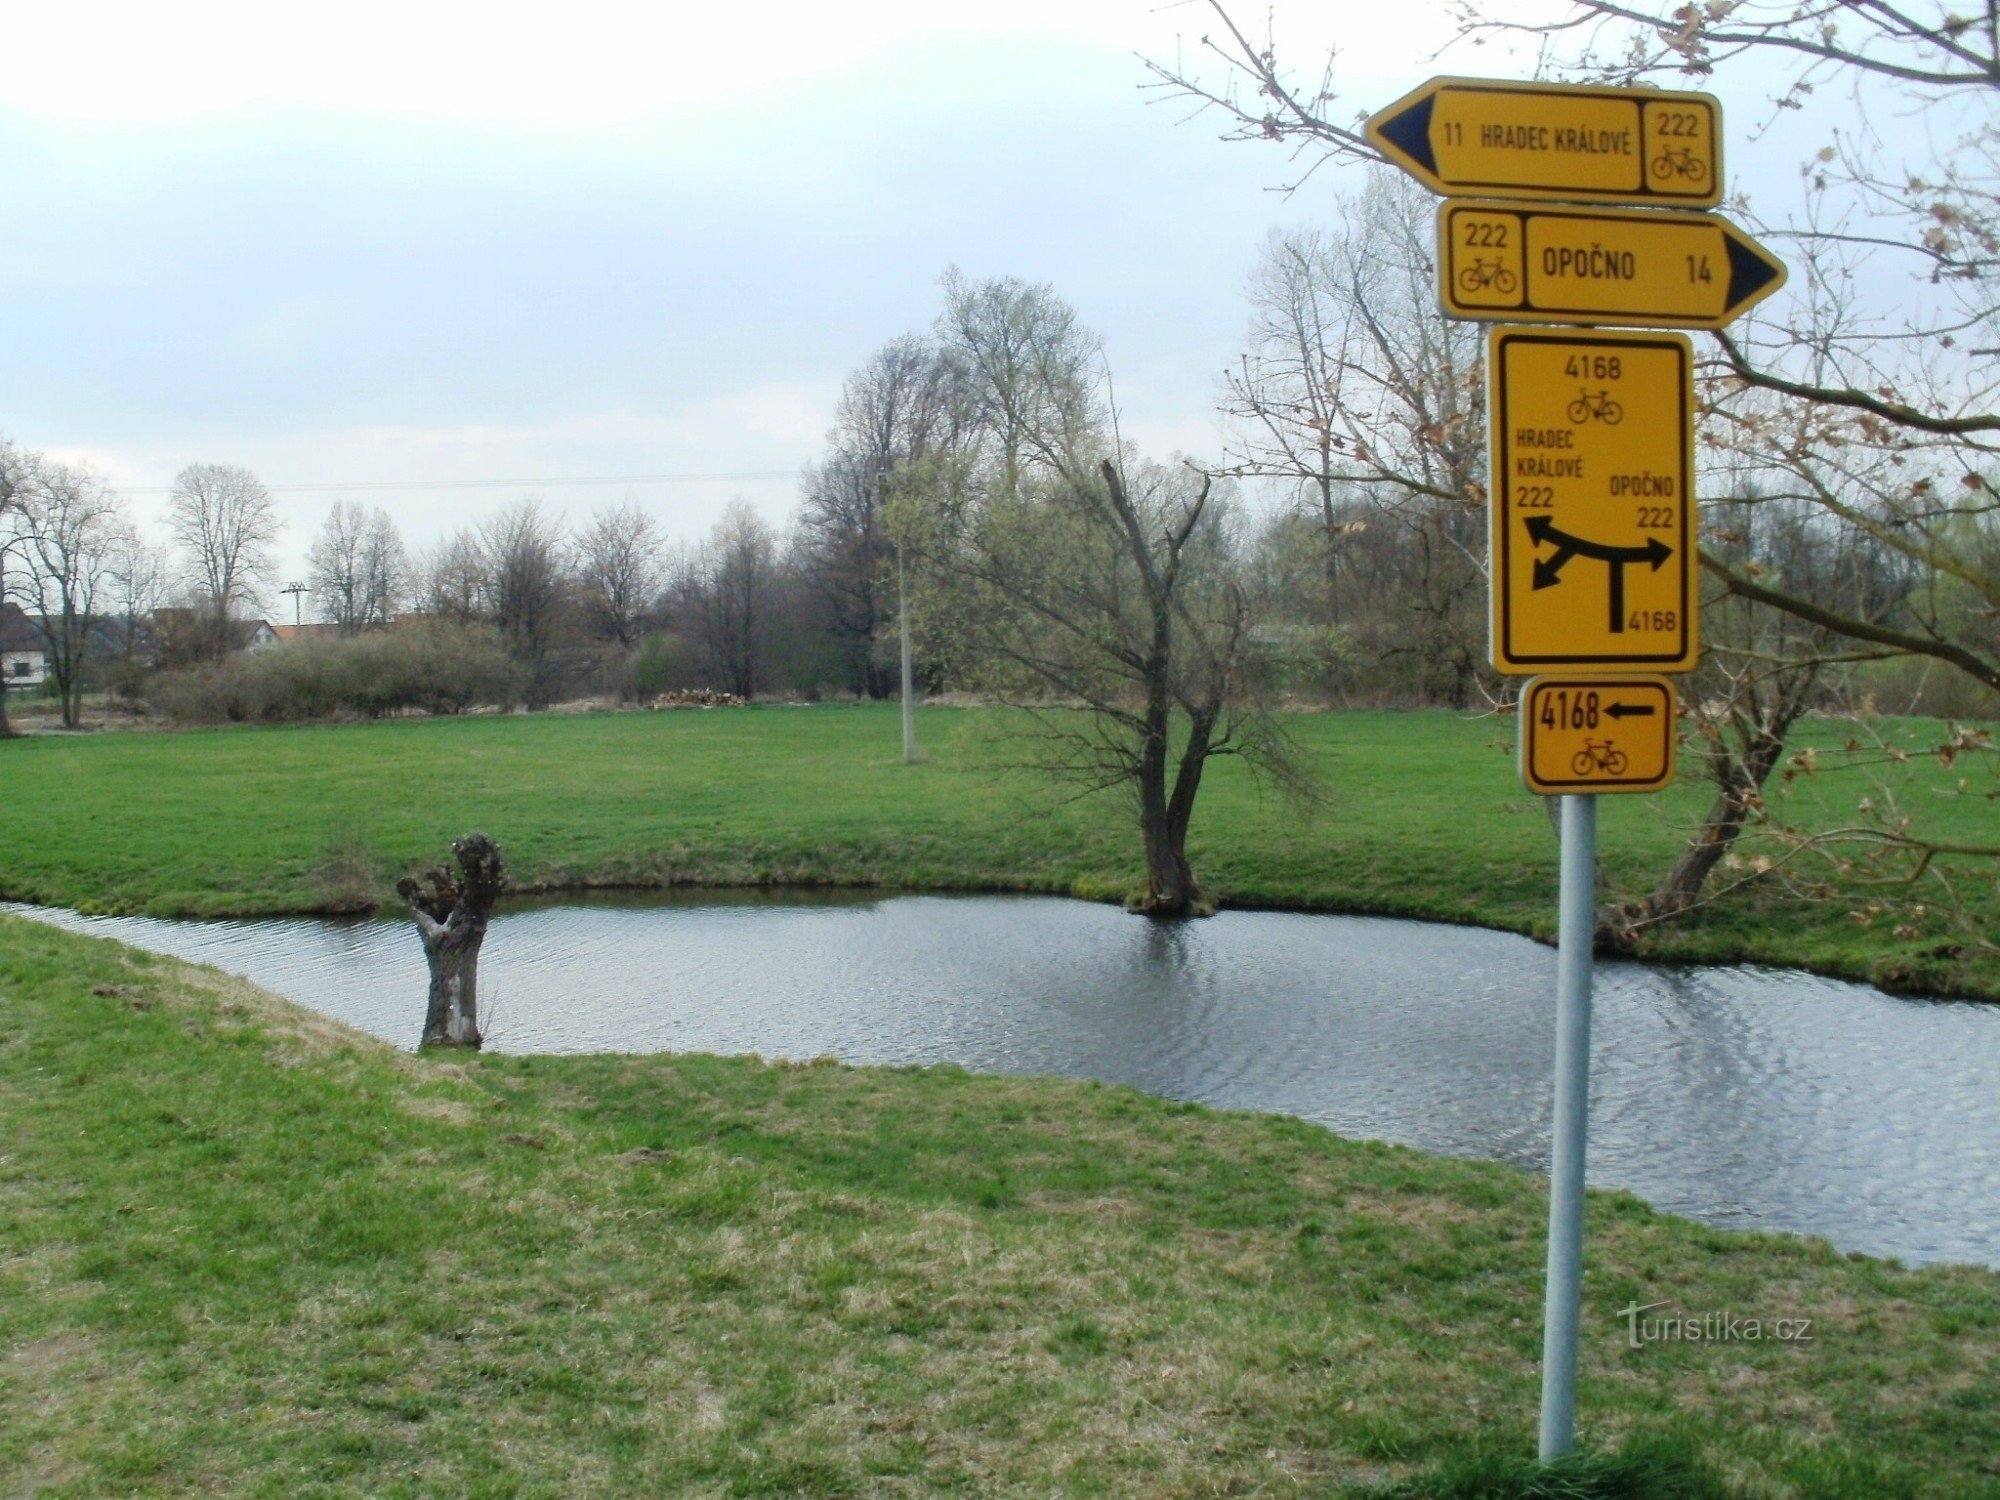 panneau cyclotouriste Krňovice près du musée en plein air